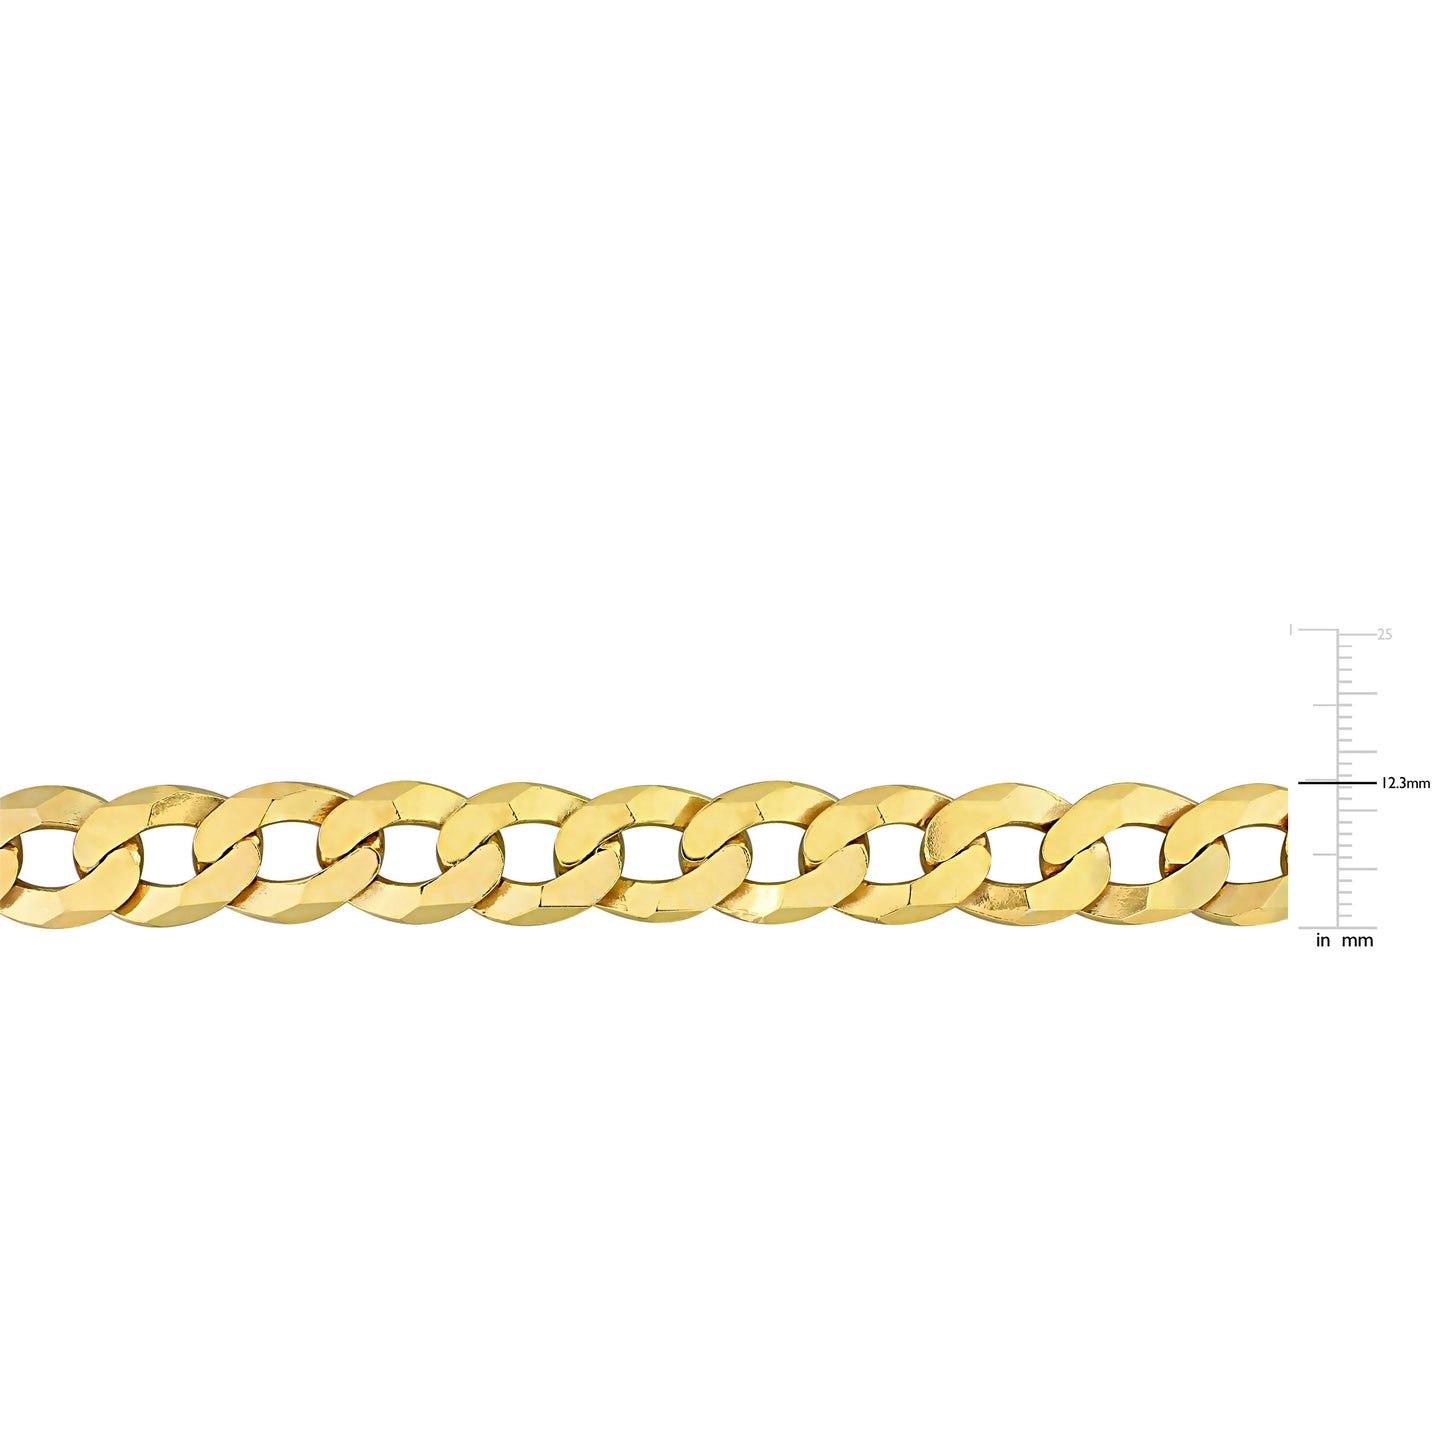 Men's 12.5MM Flat curb link bracelet